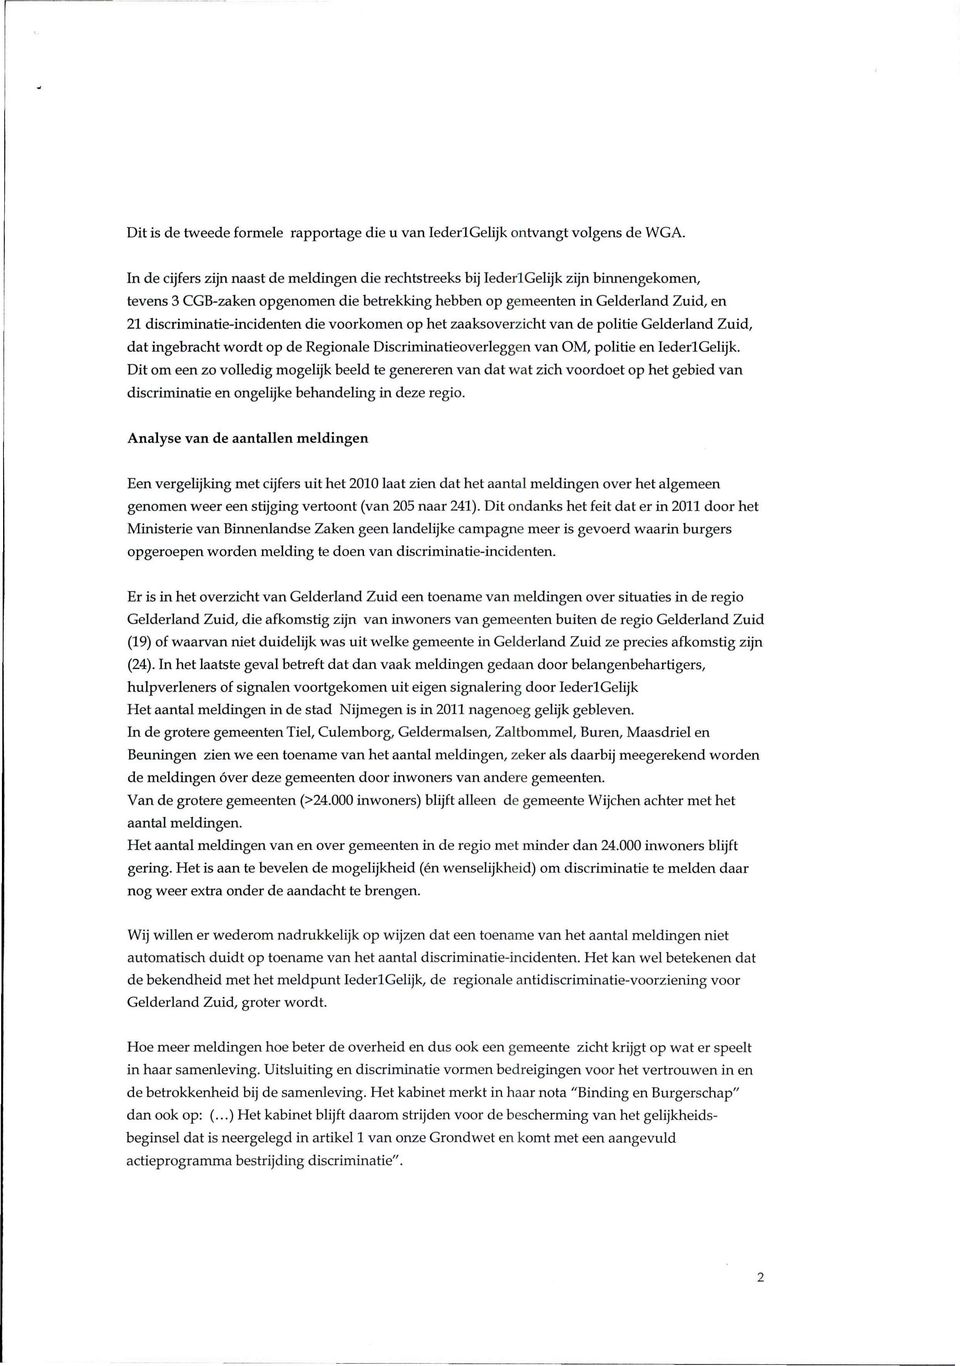 discriminatie-incidenten die voorkomen op het zaaksoverzicht van de politie Gelderland Zuid, dat ingebracht wordt op de Regionale Discriminatieoverleggen van OM, politie en Iederl Gelijk.